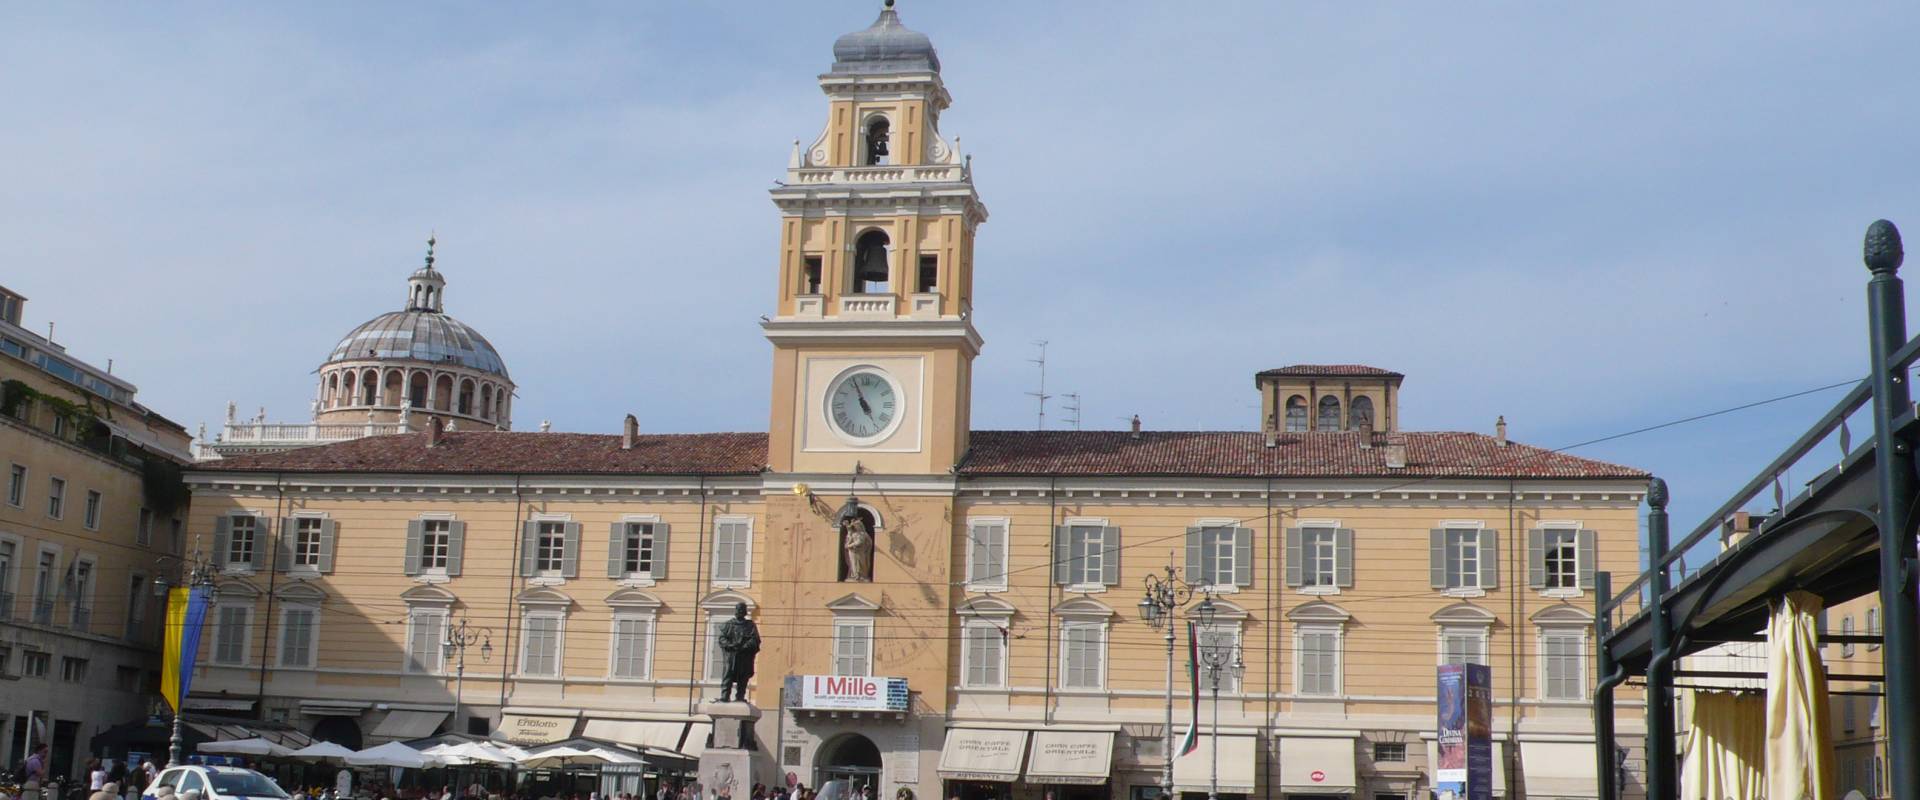 Palazzo del Governatore 2 - Parma foto di RatMan1234